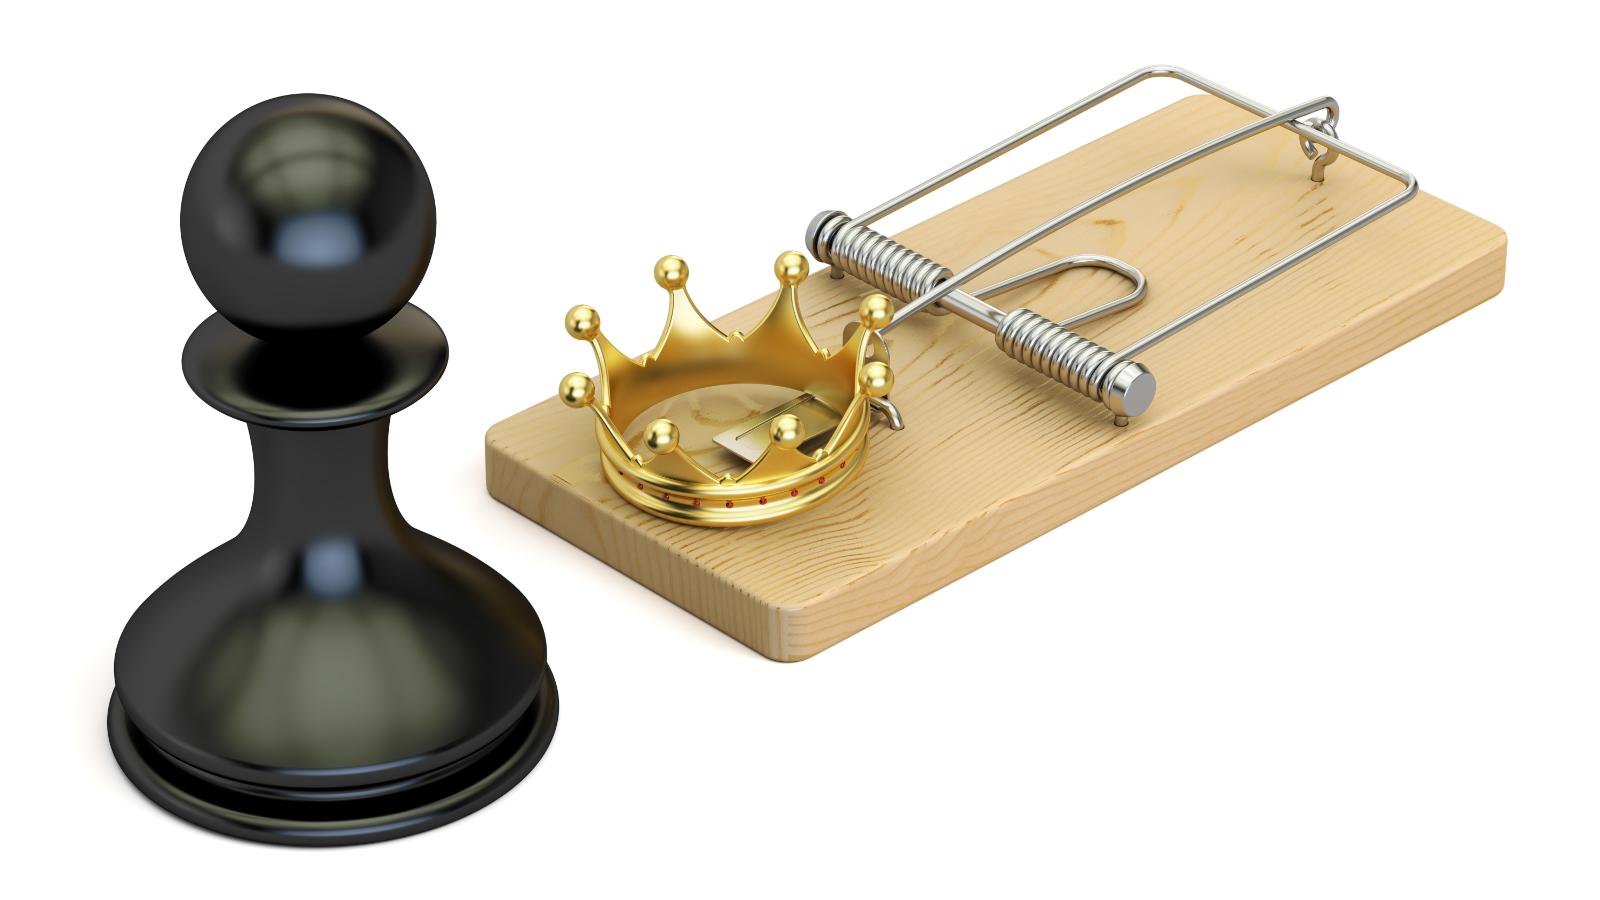 Aberturas e armadilhas no xadrez 10 edicao